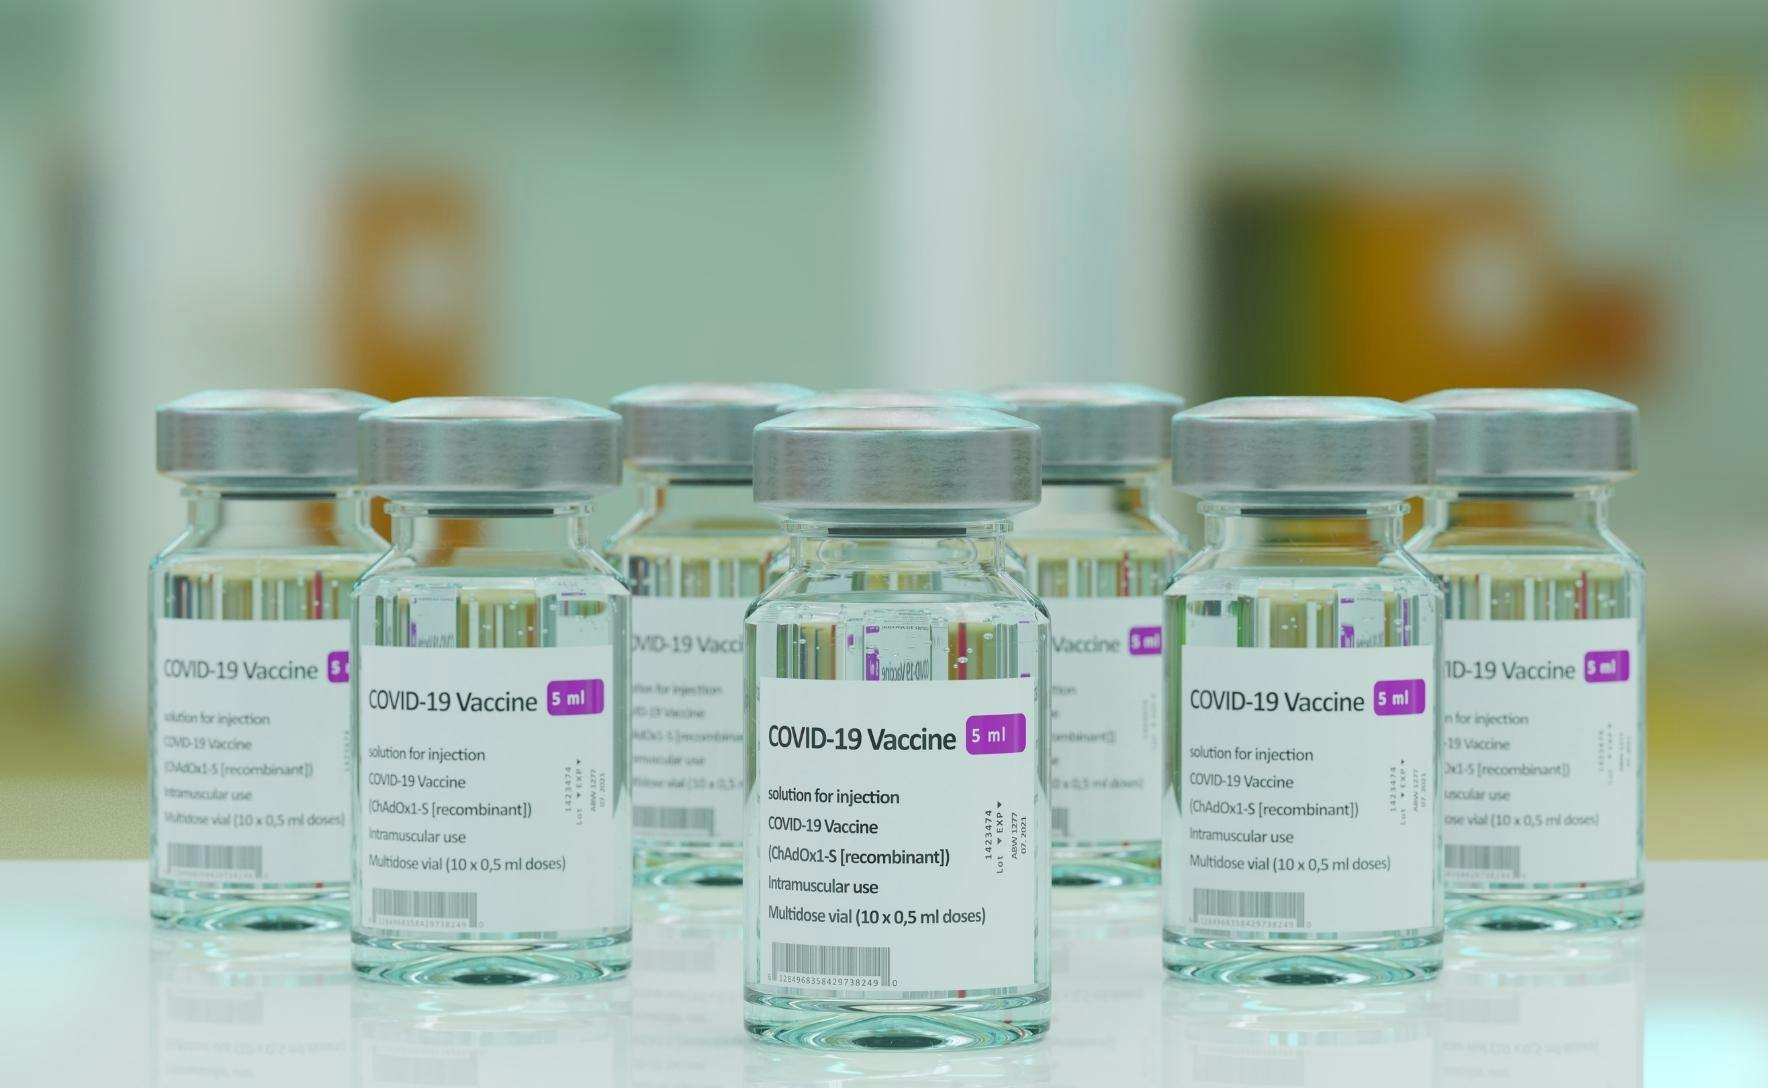 Vaccine vials labelled COVID-19 vaccine.